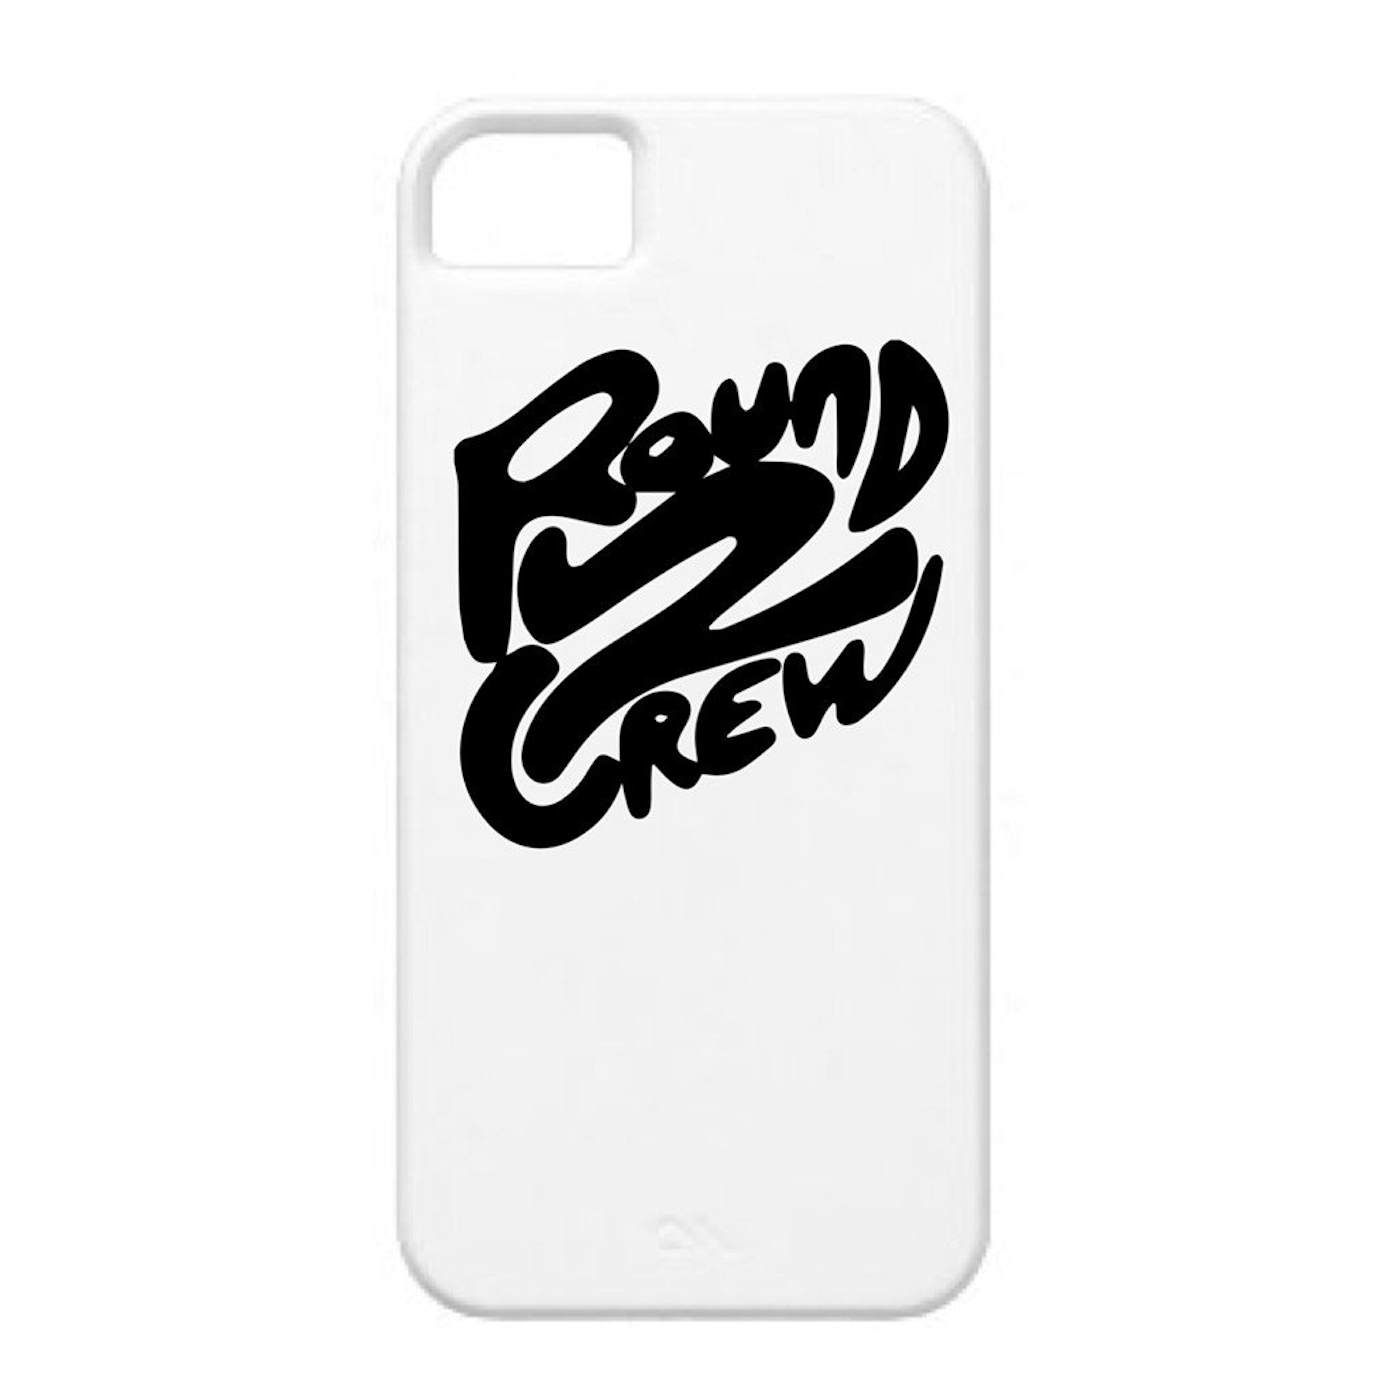 Round2Crew - iPhone Case